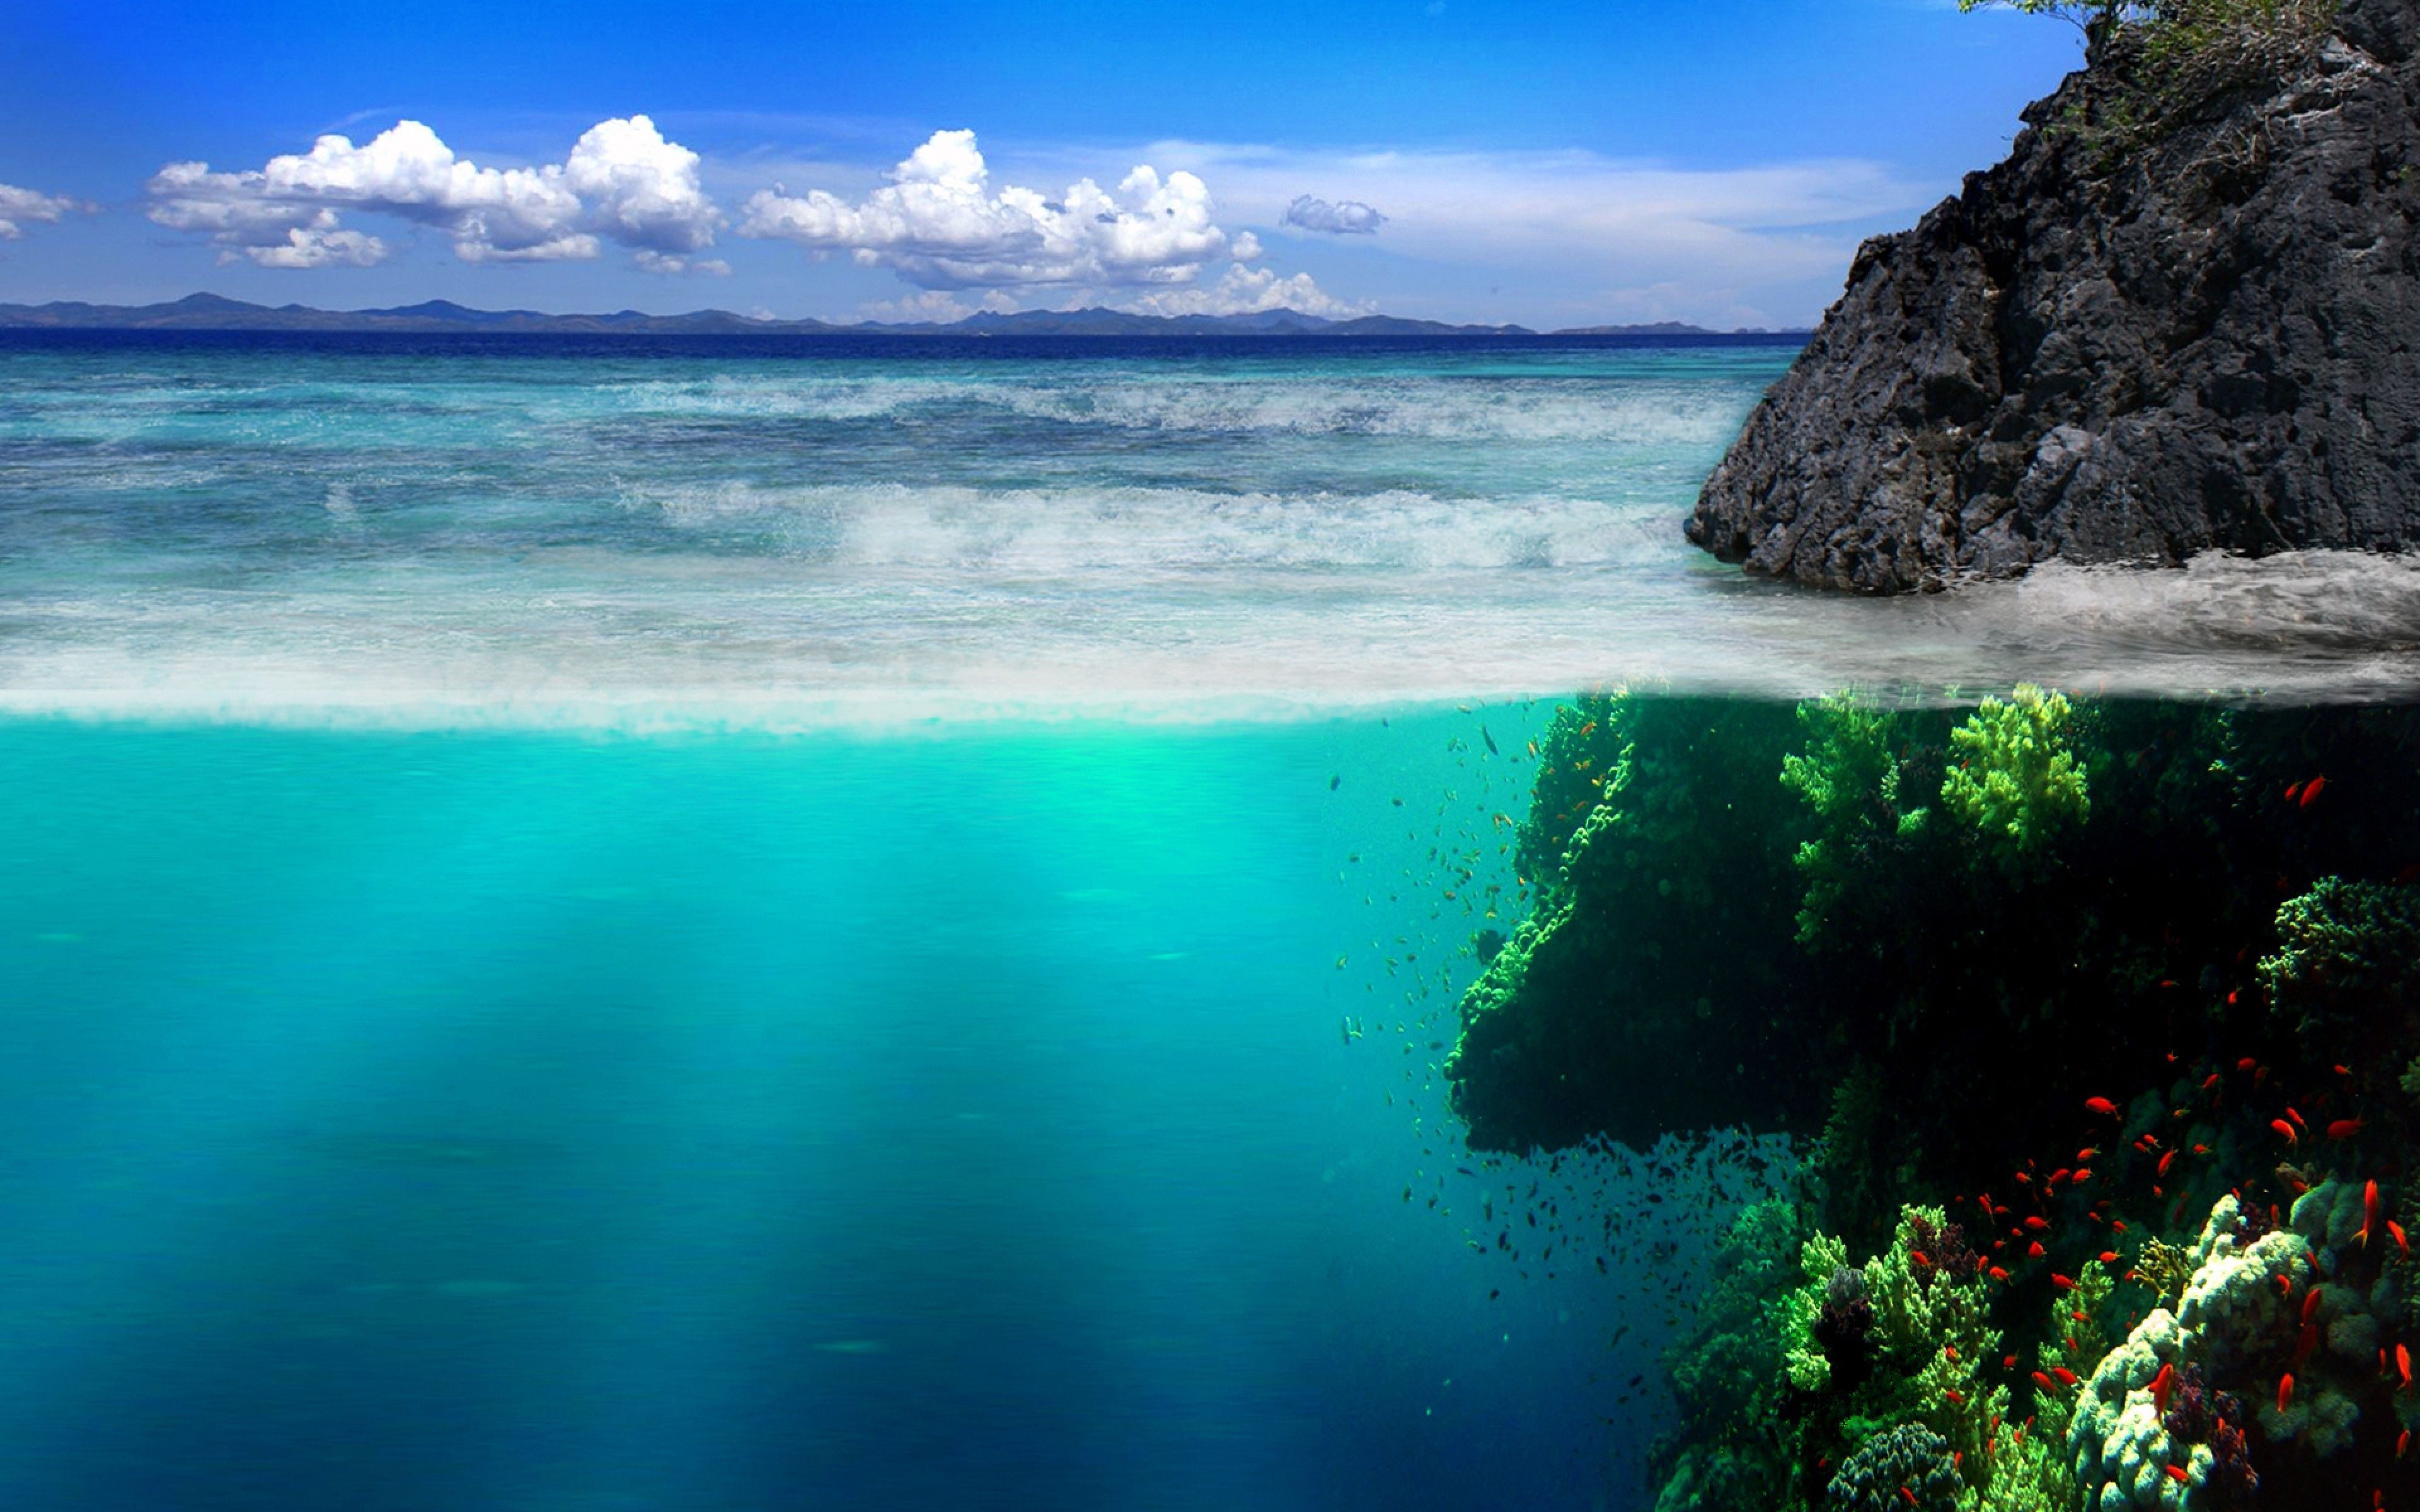 Ultra HD Wallpaper. Ocean landscape, Scenery wallpaper, Ocean background